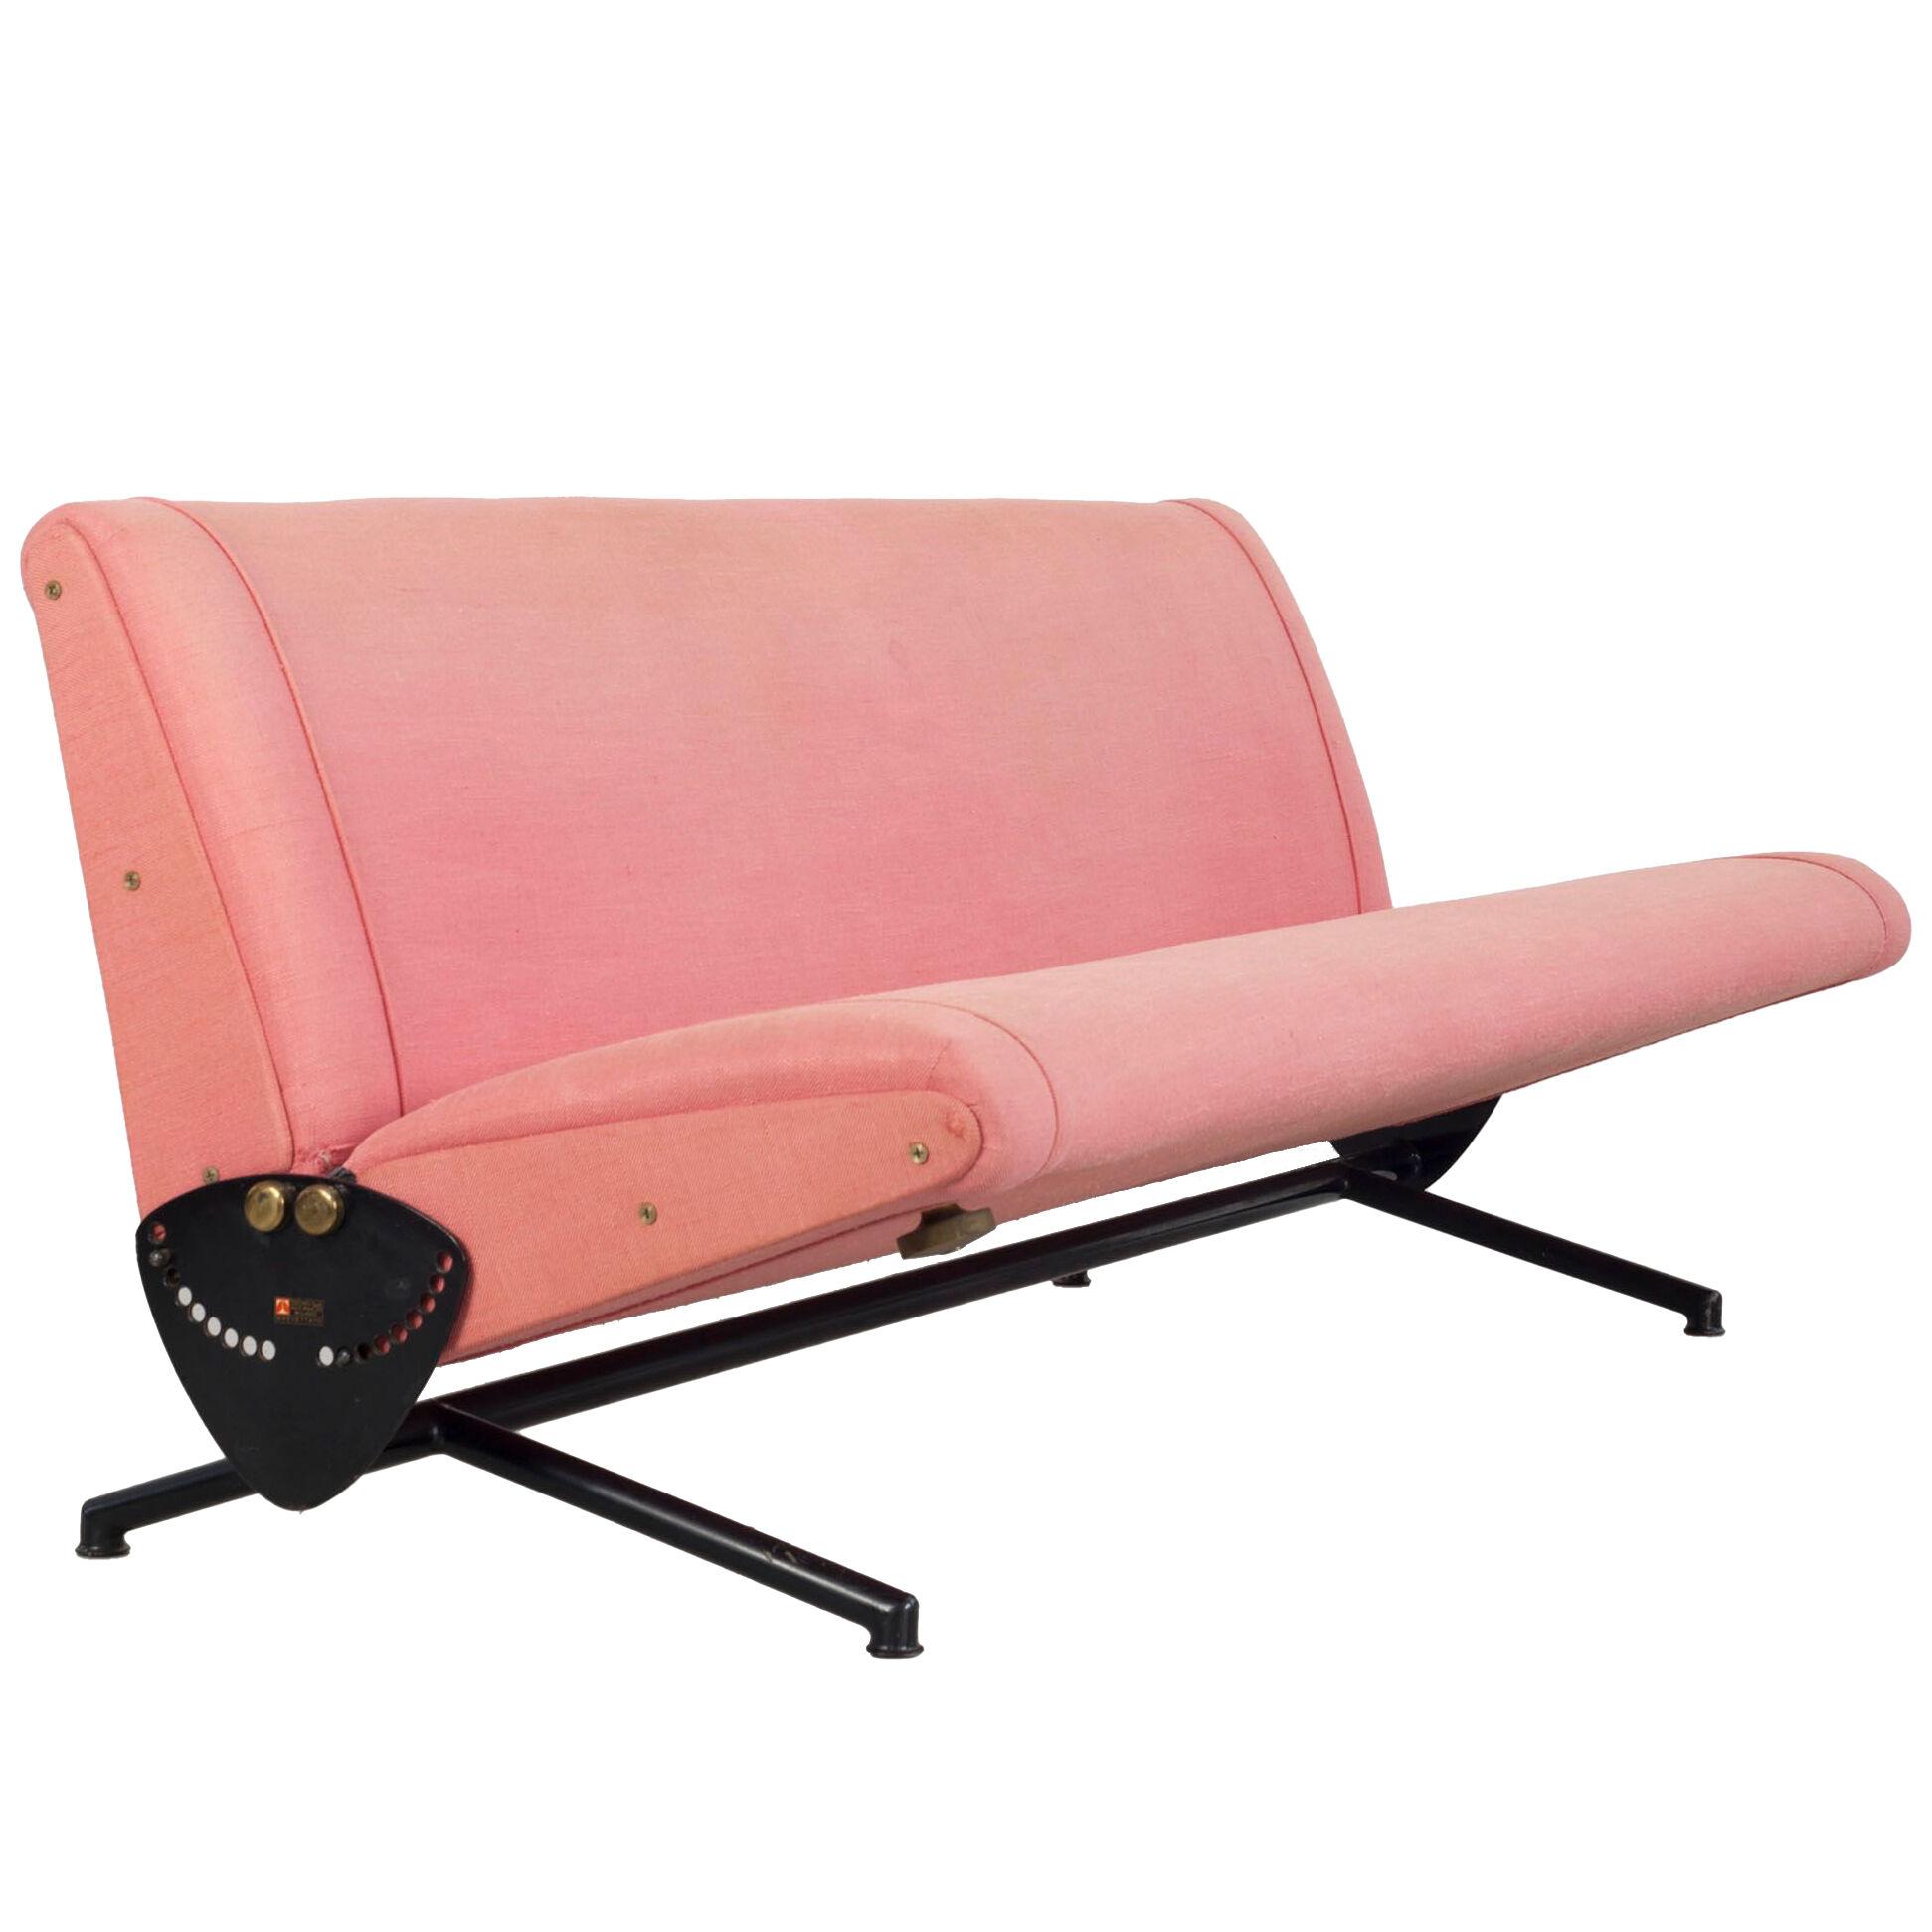  Couch "D70" - Design by Osvaldo Borsani.